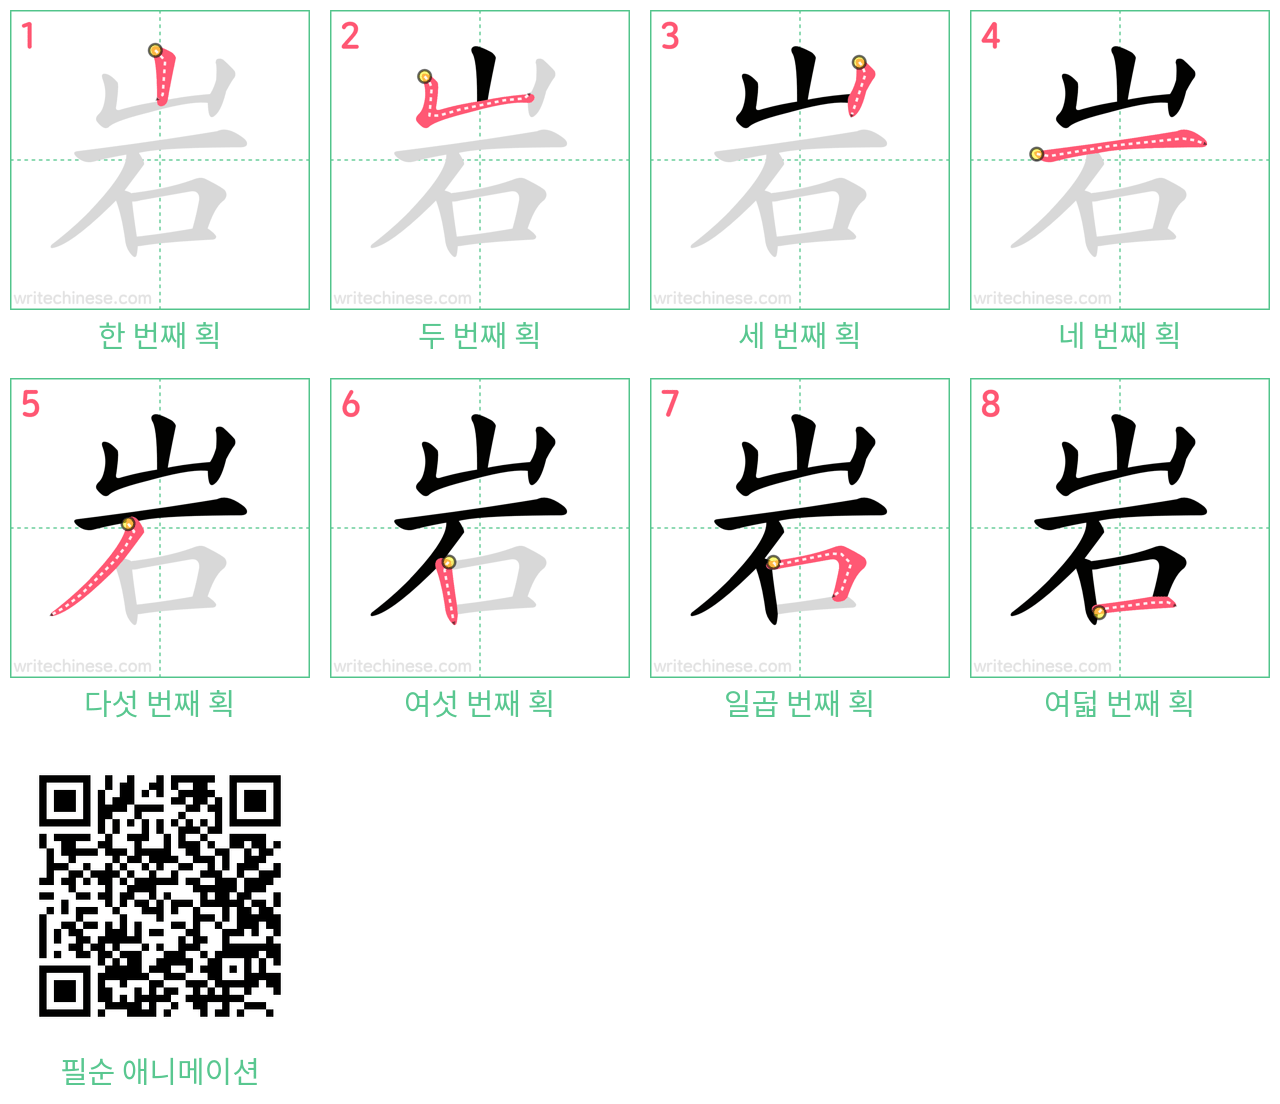 岩 step-by-step stroke order diagrams